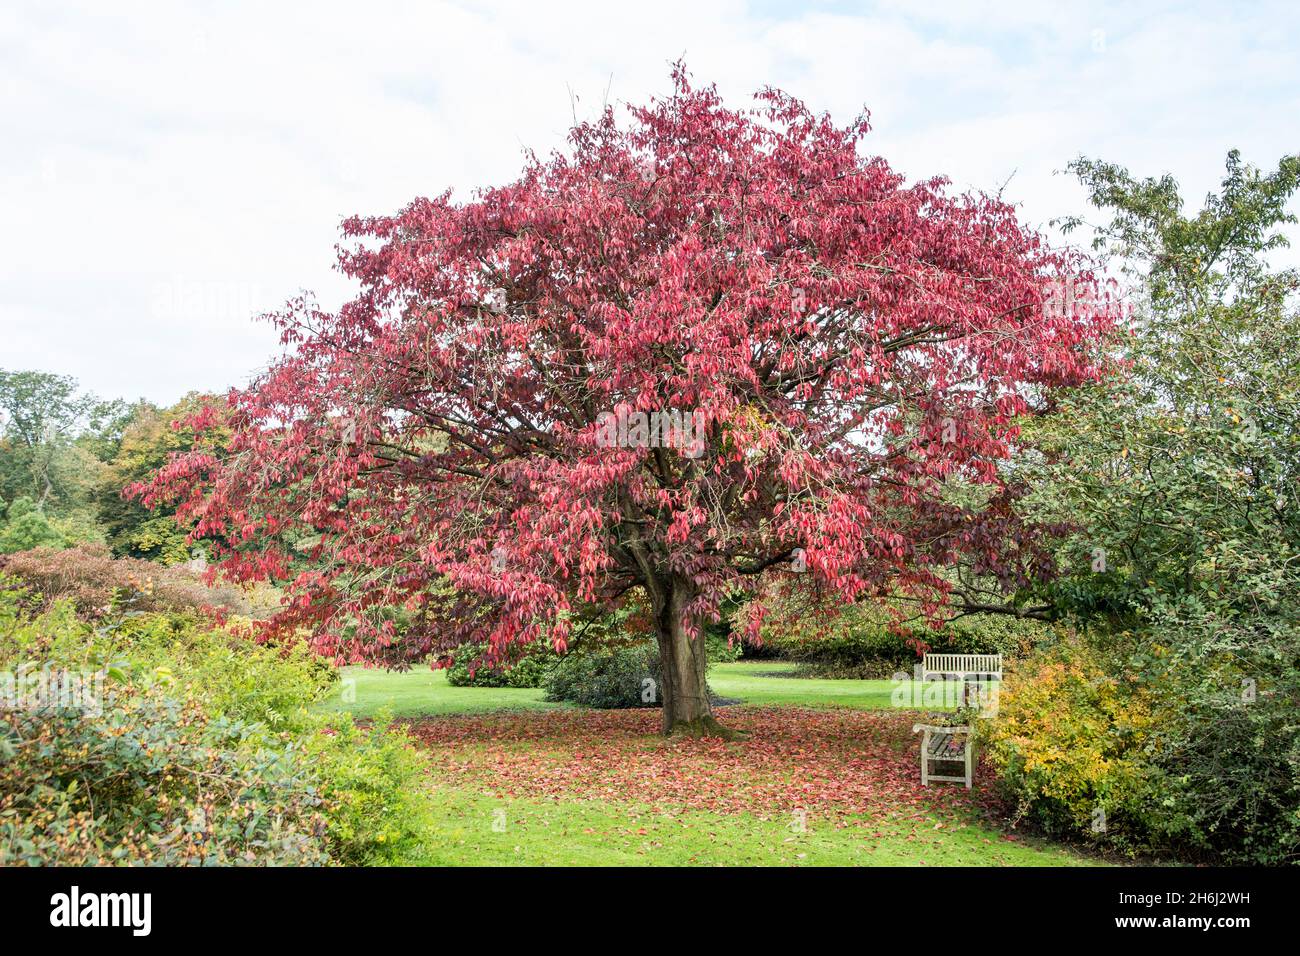 Prunus sargentii in autumn colors Stock Photo